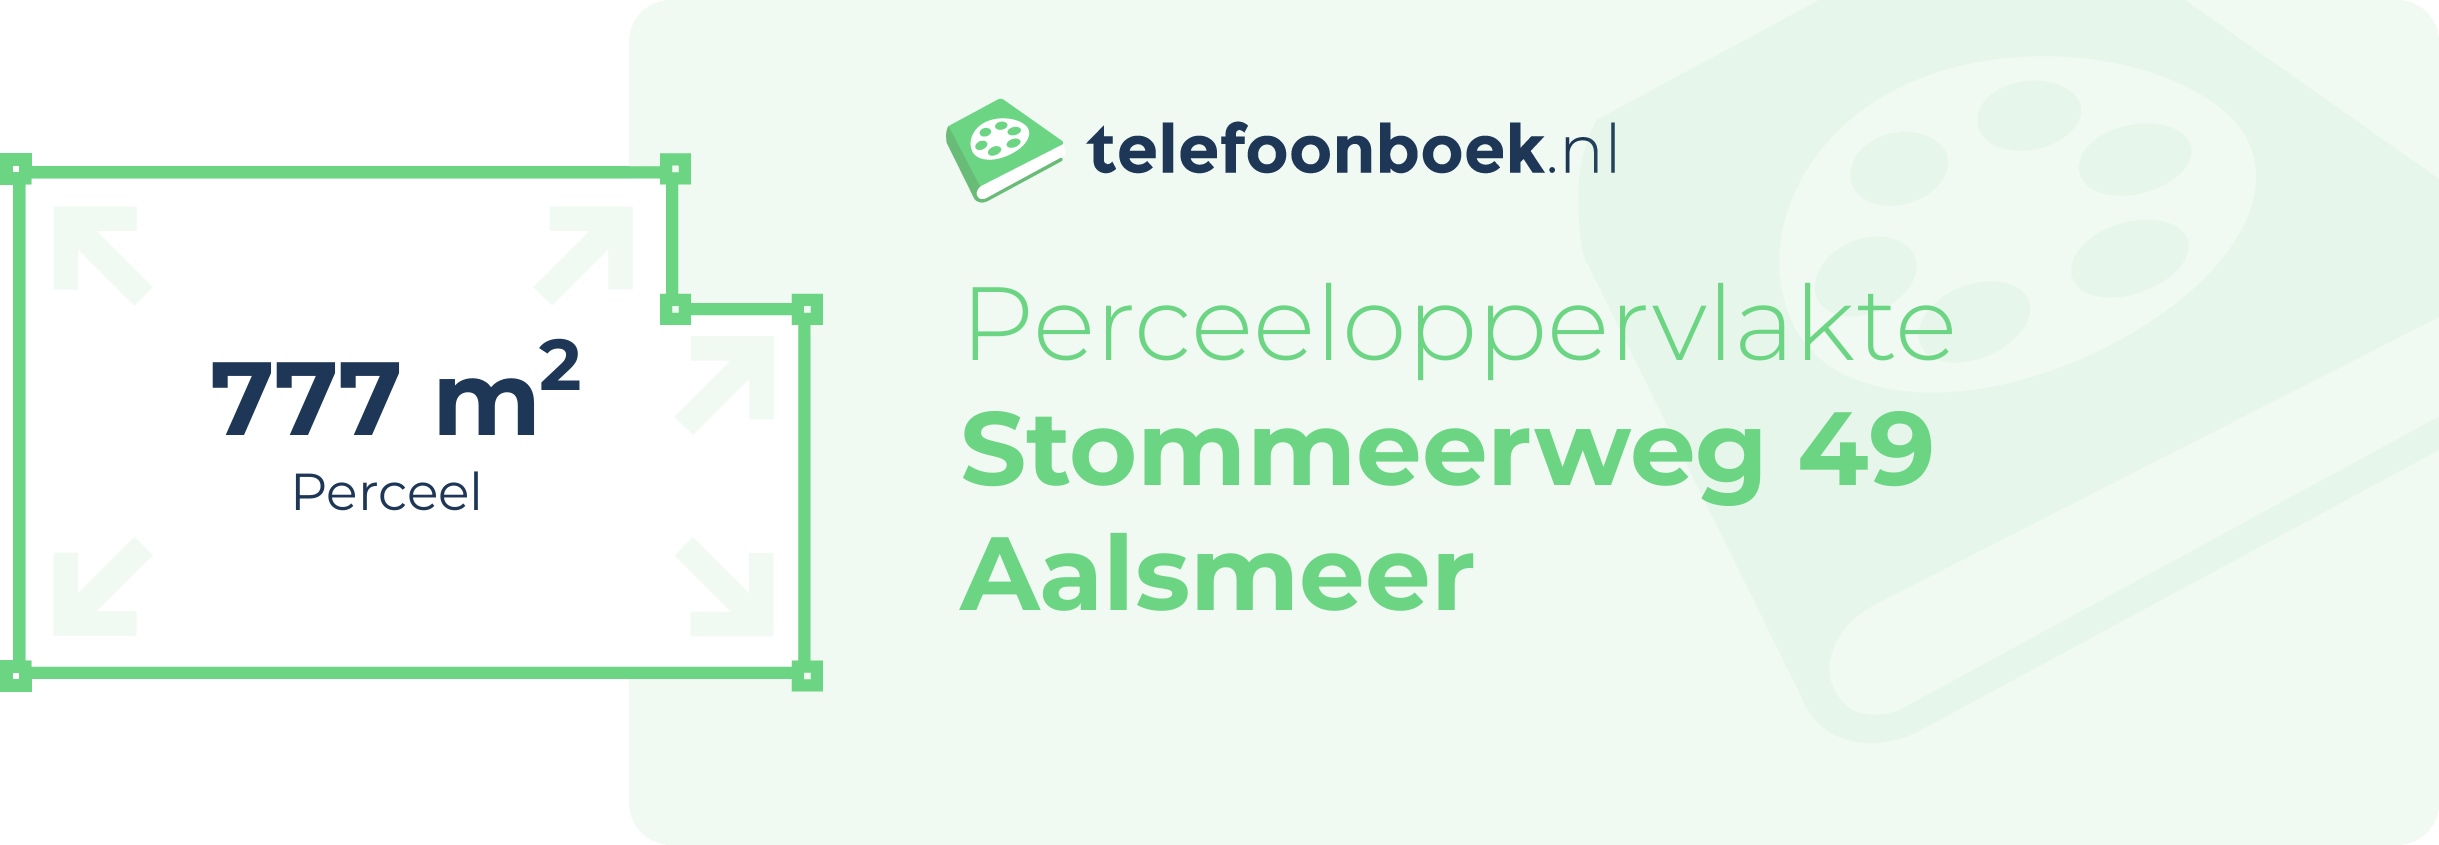 Perceeloppervlakte Stommeerweg 49 Aalsmeer